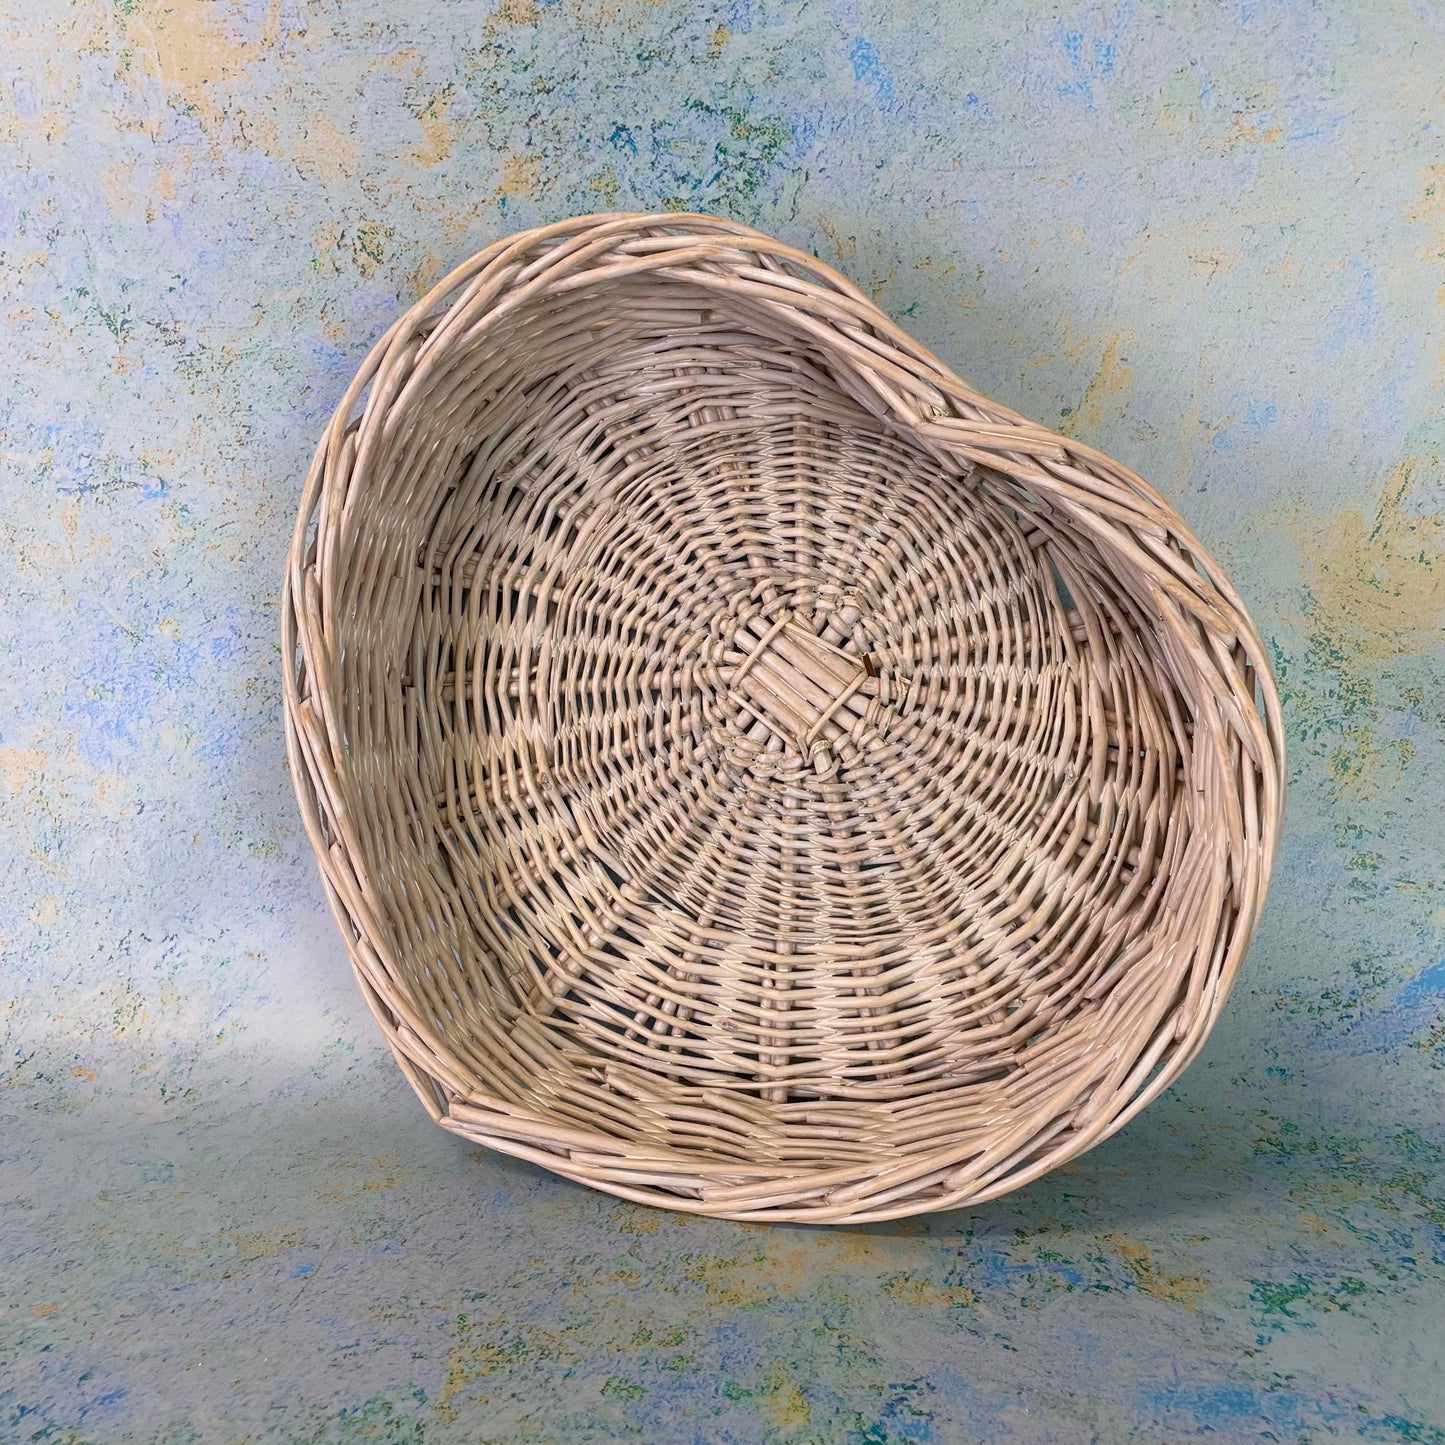 Wicker Heart Shaped Basket - Medium